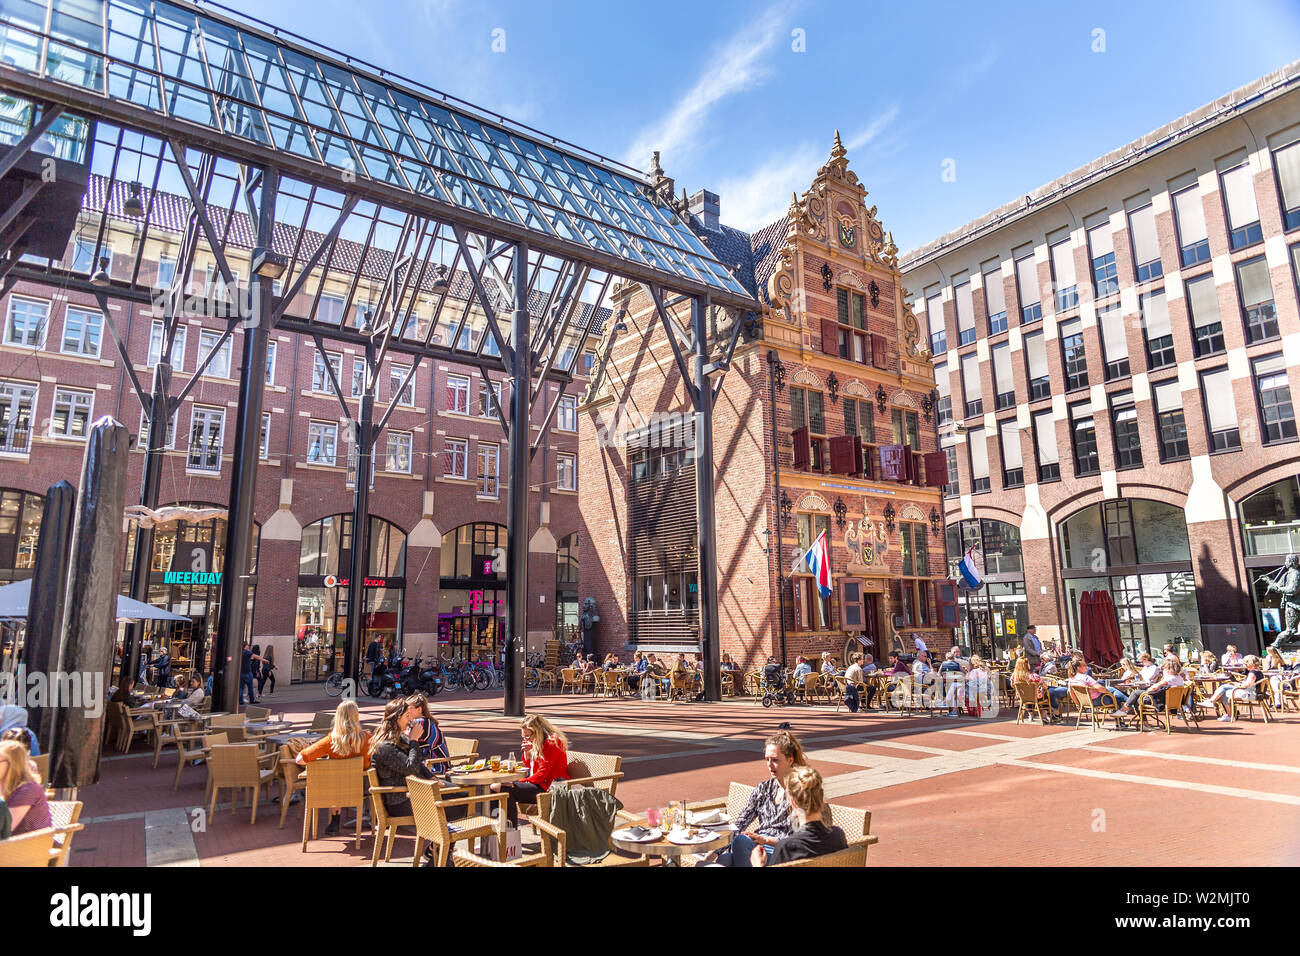 Nice Building in Groningen Stock Photo